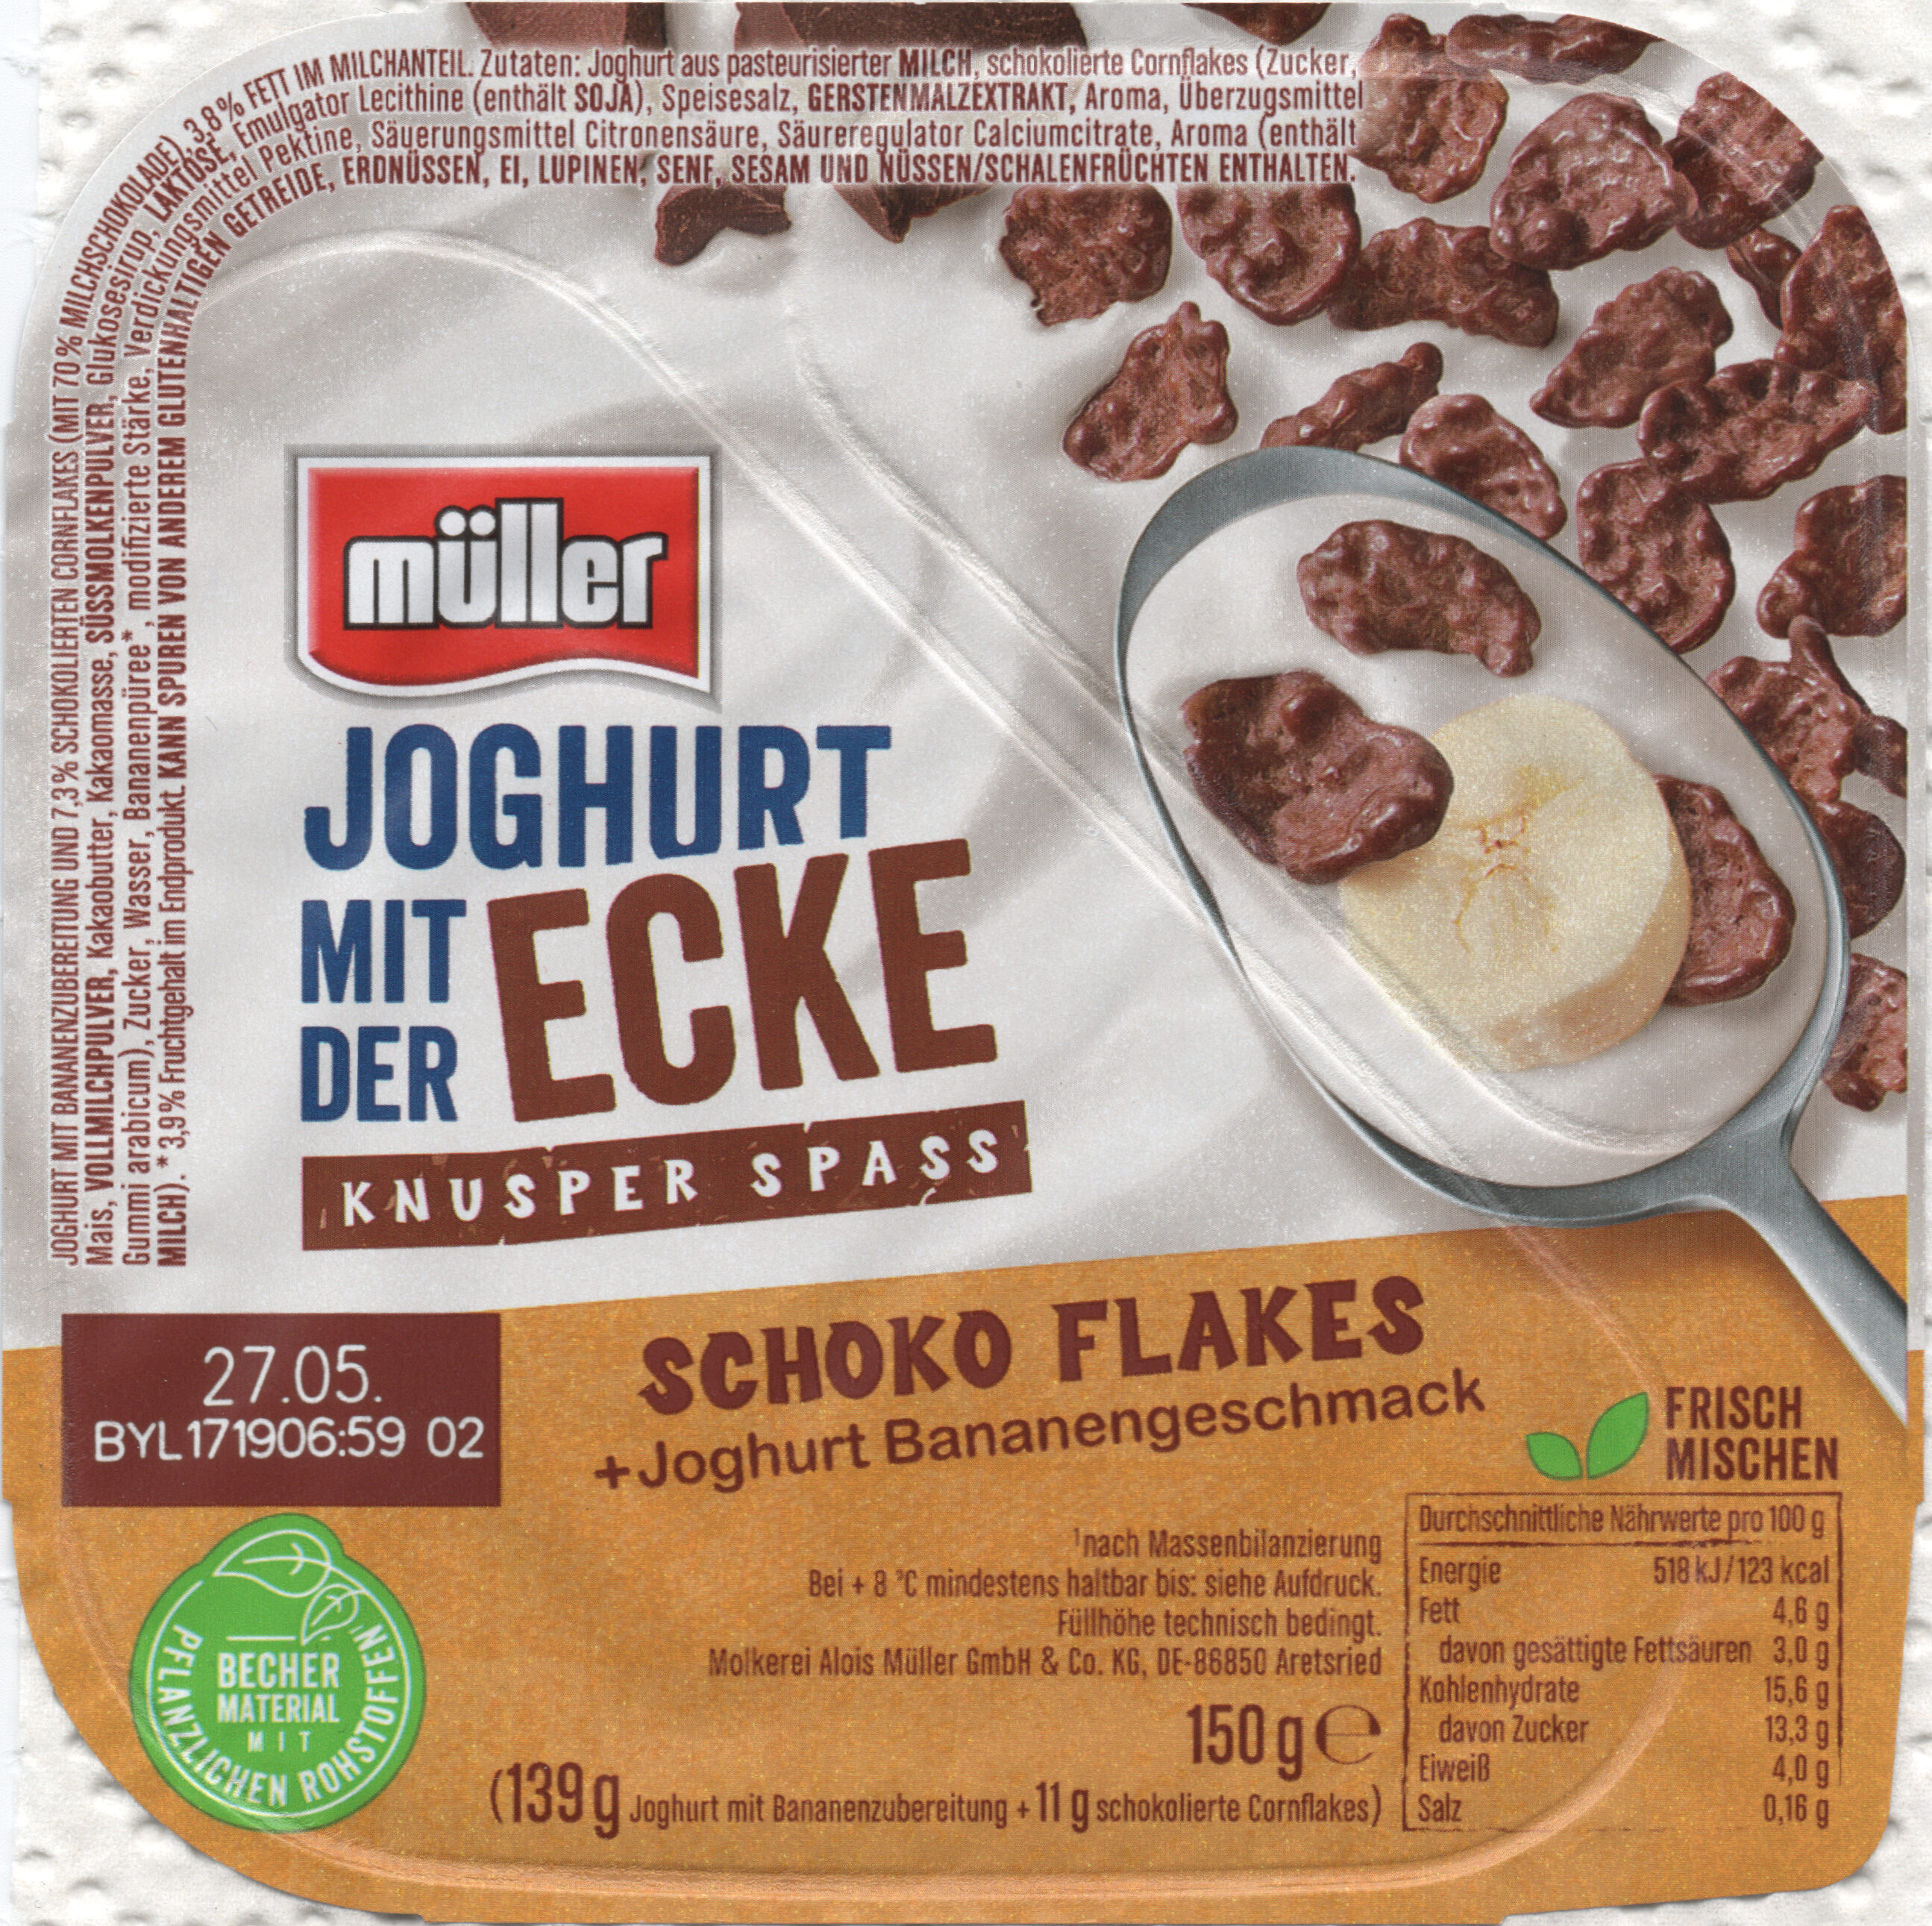 Joghurt mit der Ecke: Schoko Flakes - Produkt